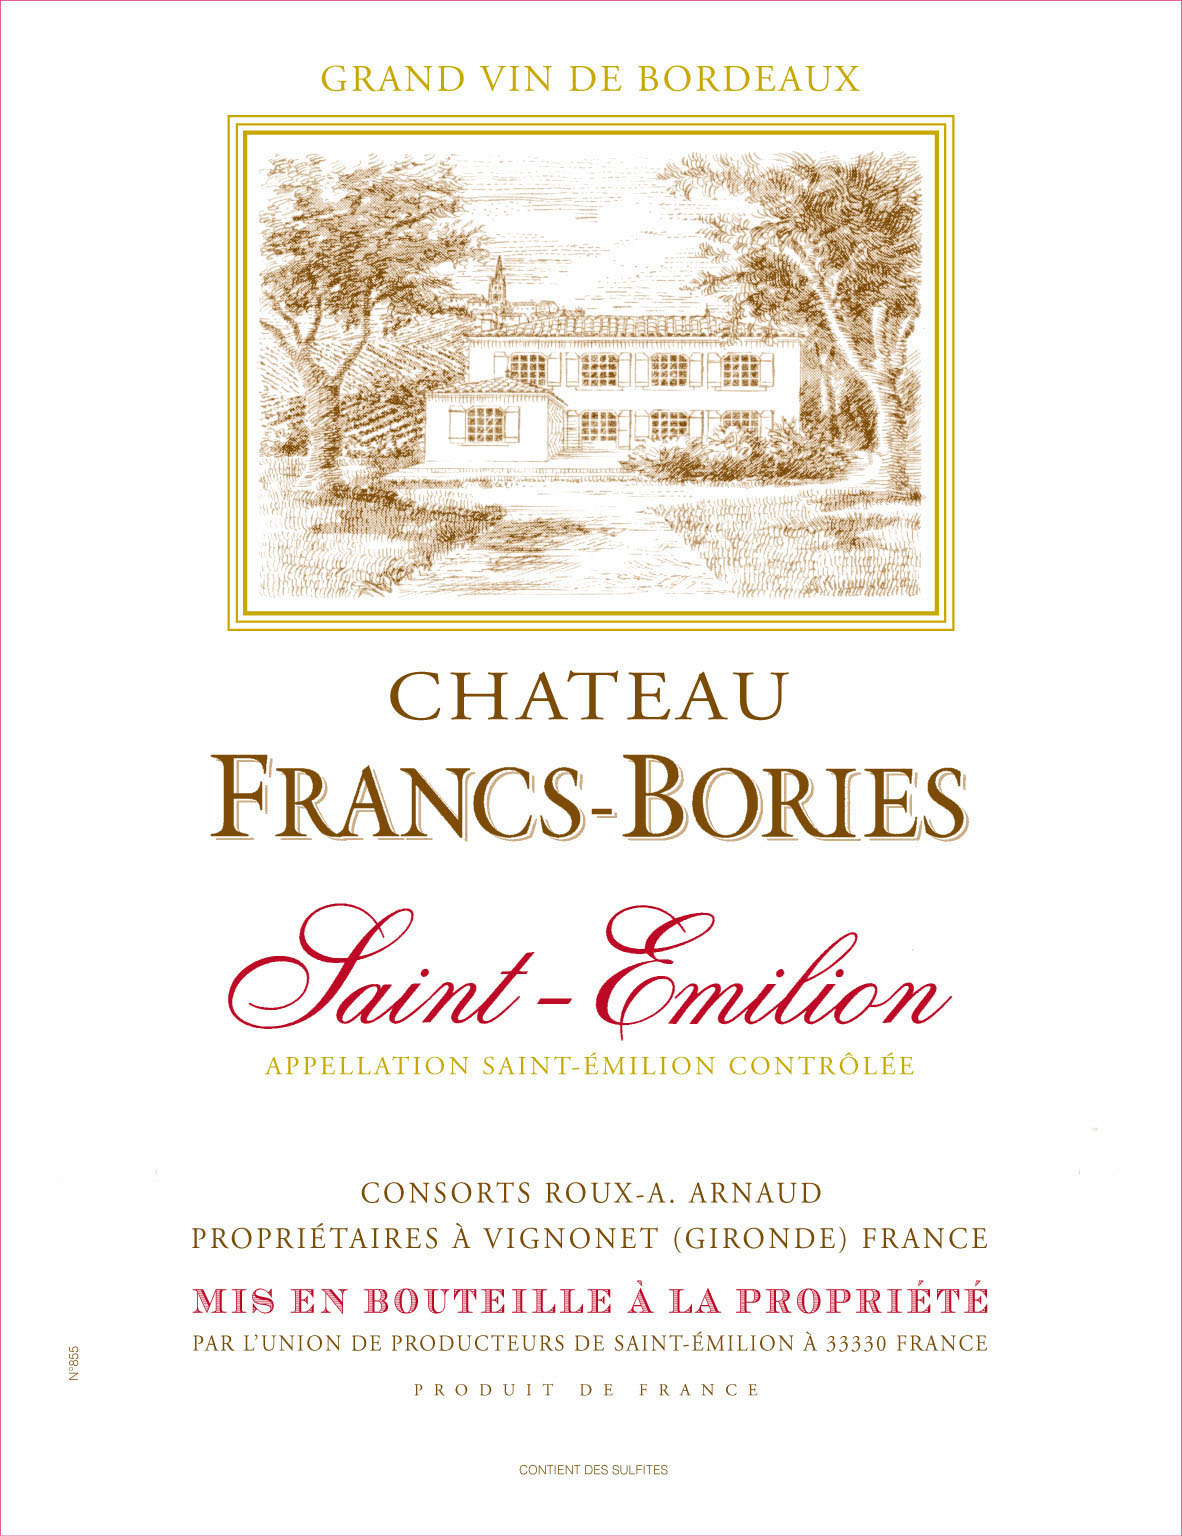 Chateau Francs-Bories label